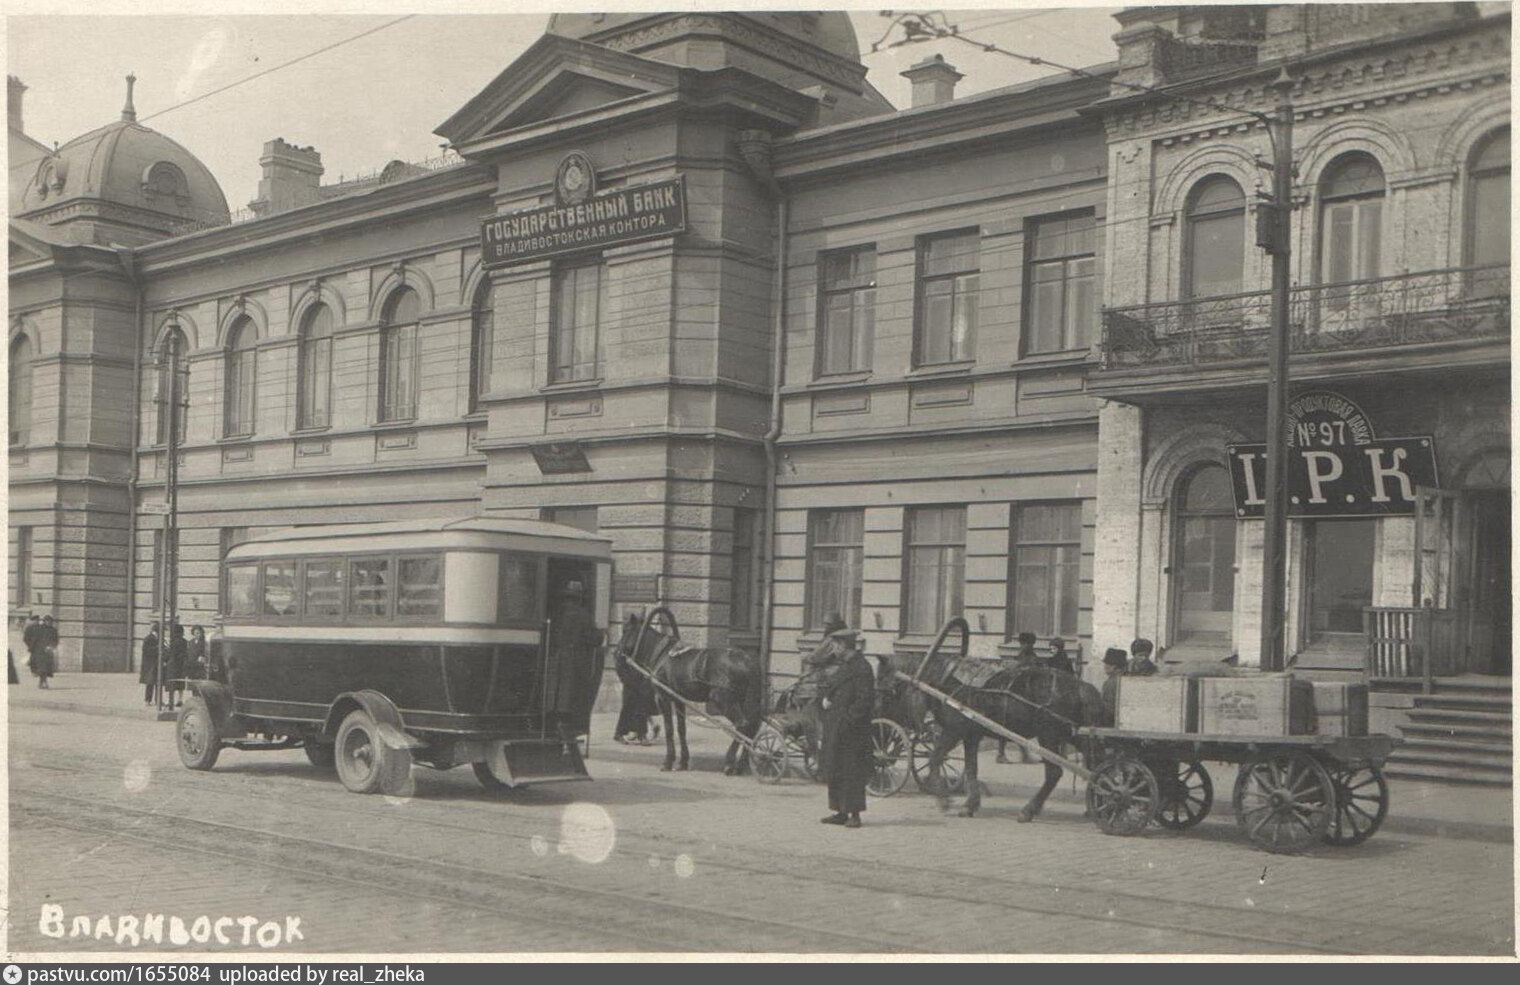 Владивосток 1930 год. Светланская 56 Владивосток. Центральный банк Владивосток. Госбанк 1930 г.